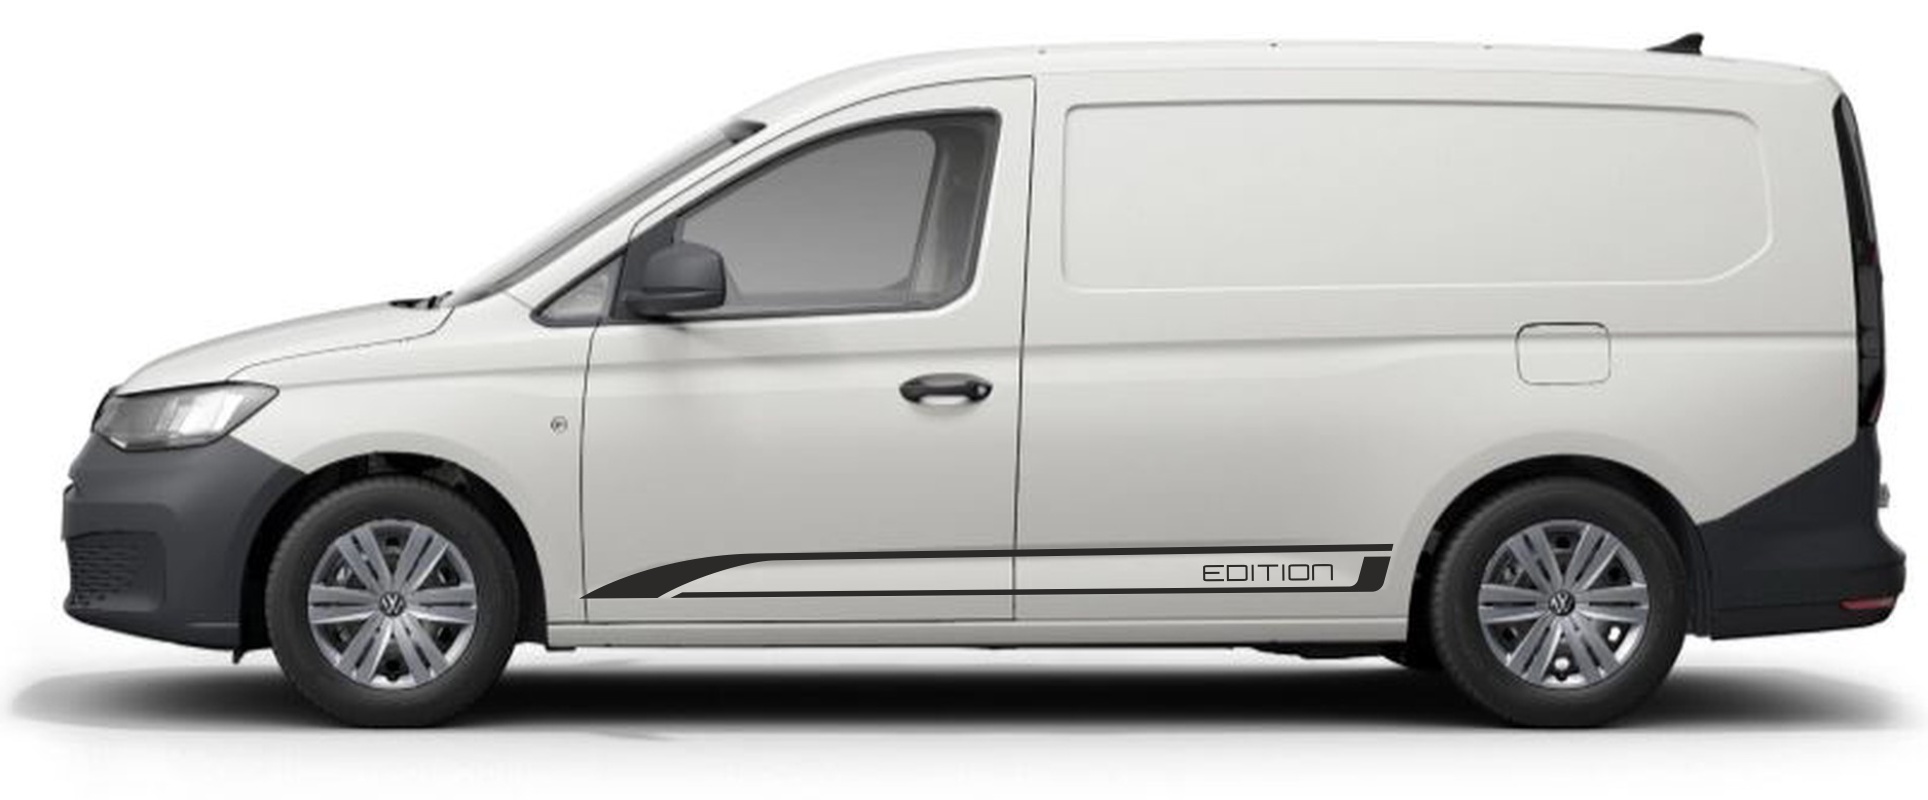 Naklejki VW Caddy MAXI Edition od 2020 decals stripes sticker aufkleber nalepky